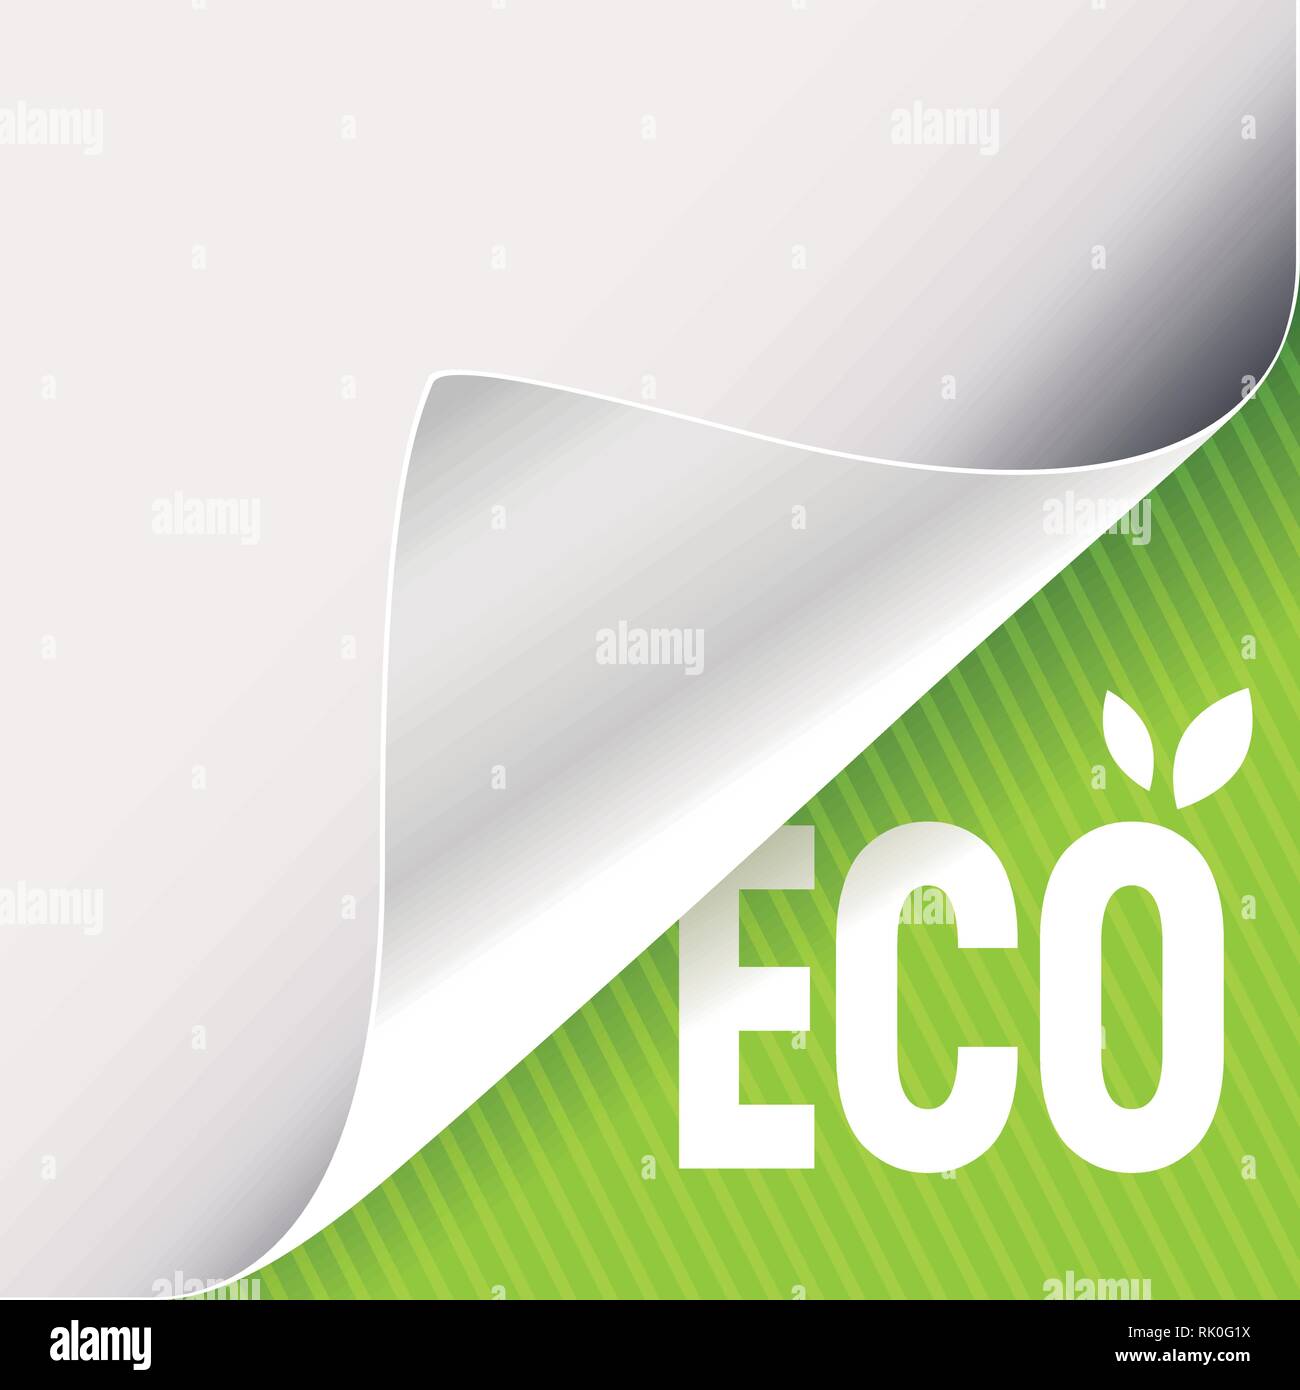 Gewellte Ecke des weißen Papiers auf einer grünen unteren rechten Winkel Hintergrund. Eco slogan Zeichen mit Blättern. Vector Illustration. Stock Vektor